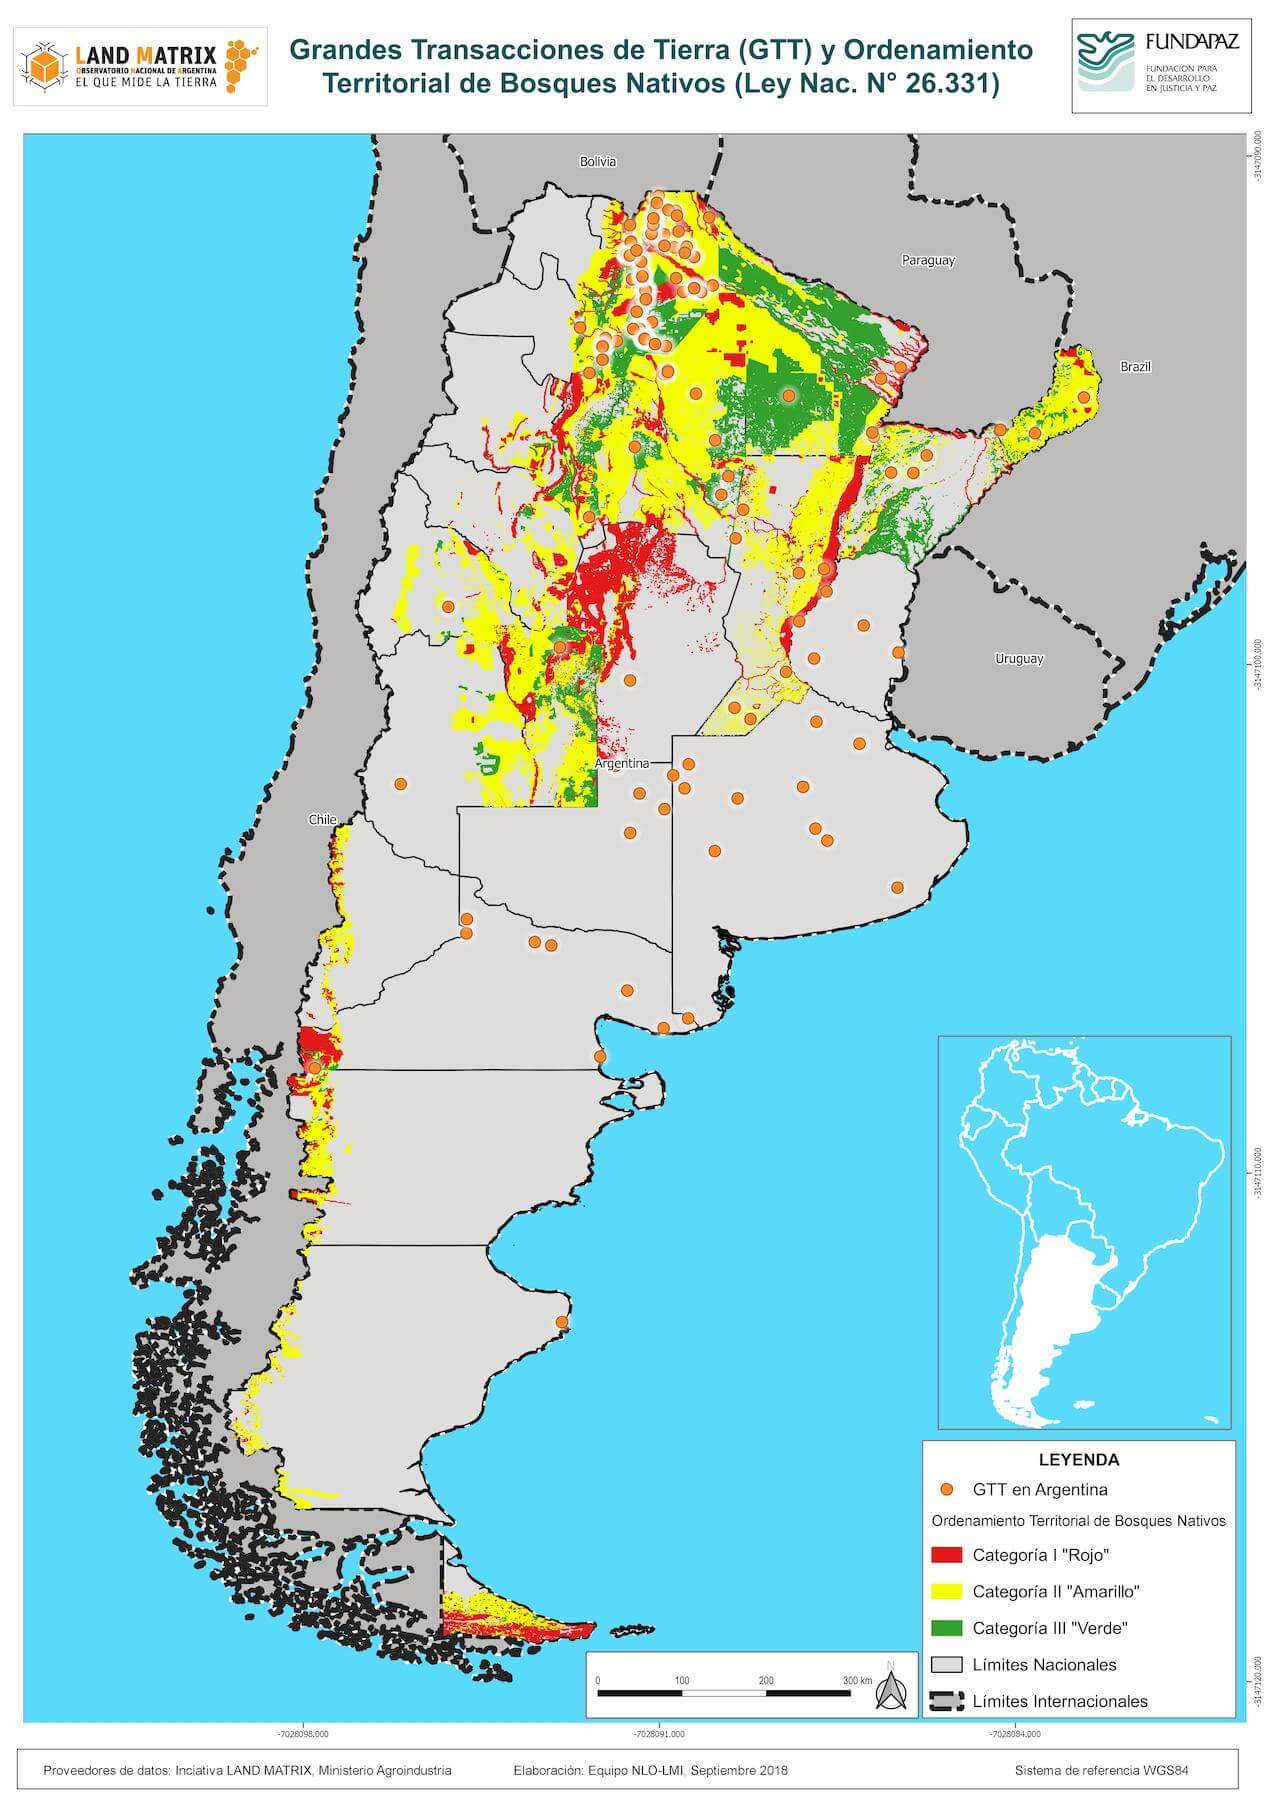 Grandes Transacciones de Tierra y ordenamiento territorial de los bosques nativos de Argentina (Ley Nac. 26.331)